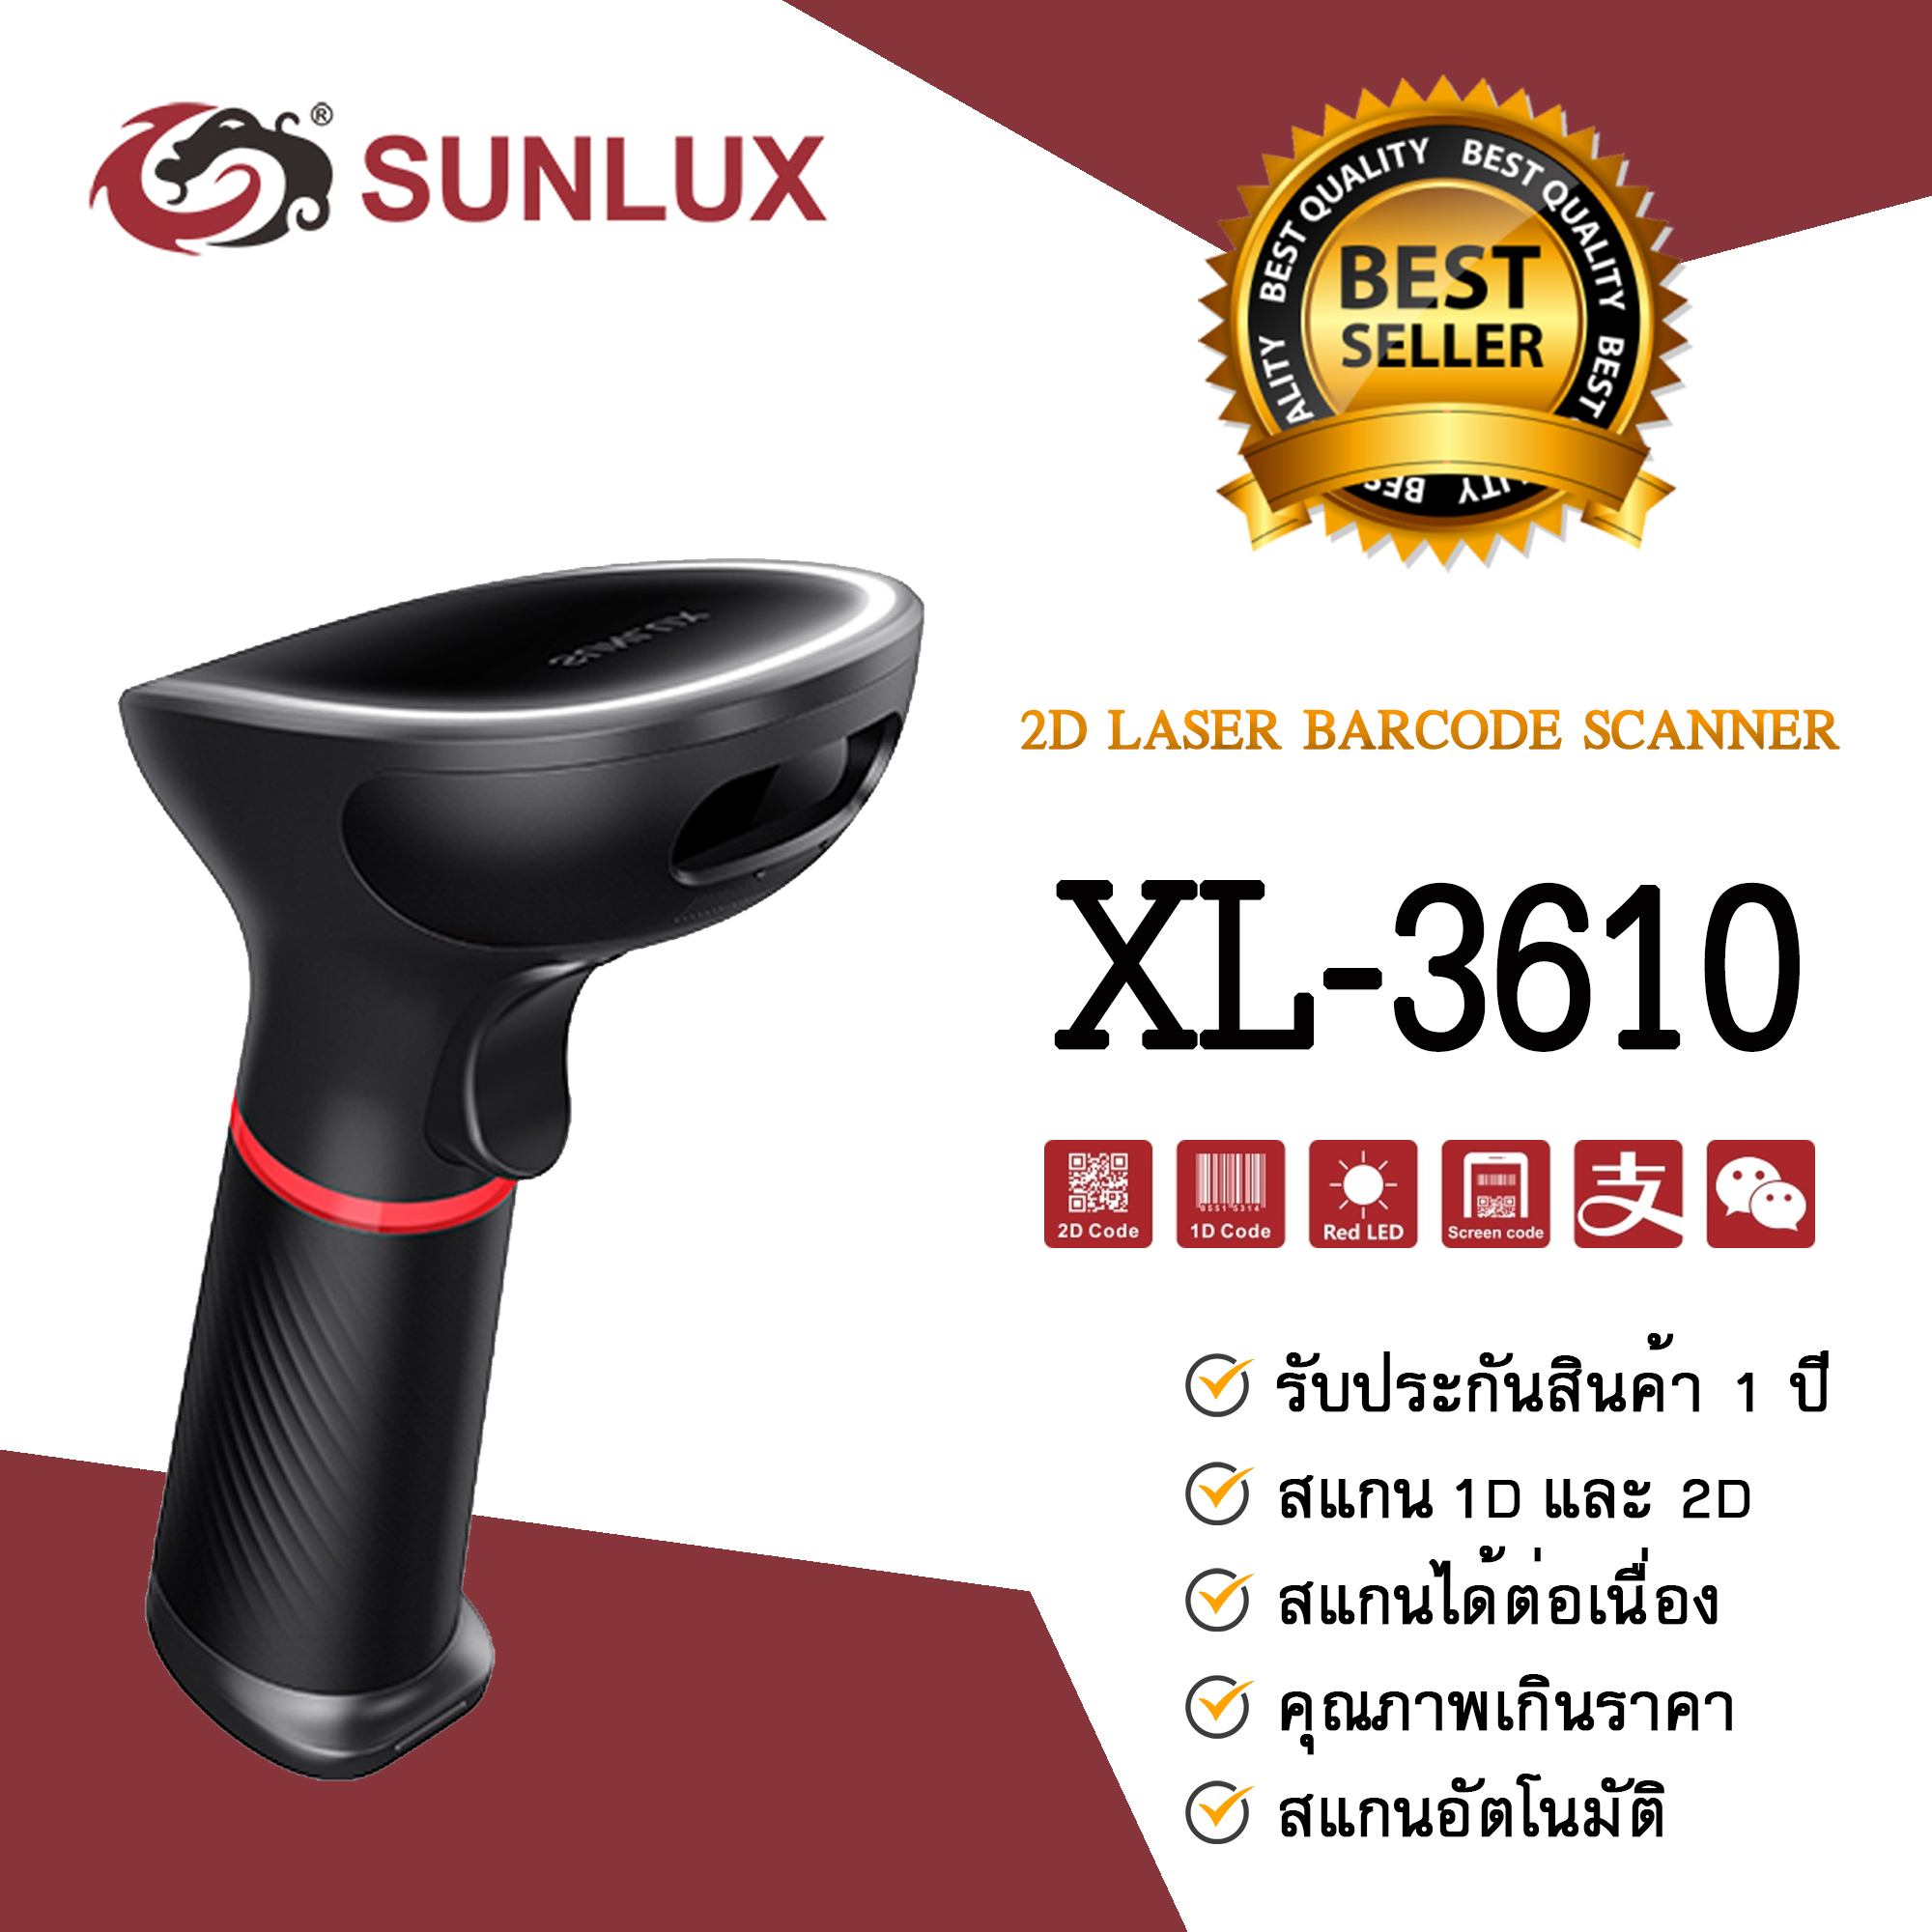 รุ่นใหม่ !! เครื่องอ่านบาร์โค้ด Sunlux รุ่น XL-3610 รองรับการสแกน 2D (Sunlux 2D Scanner)